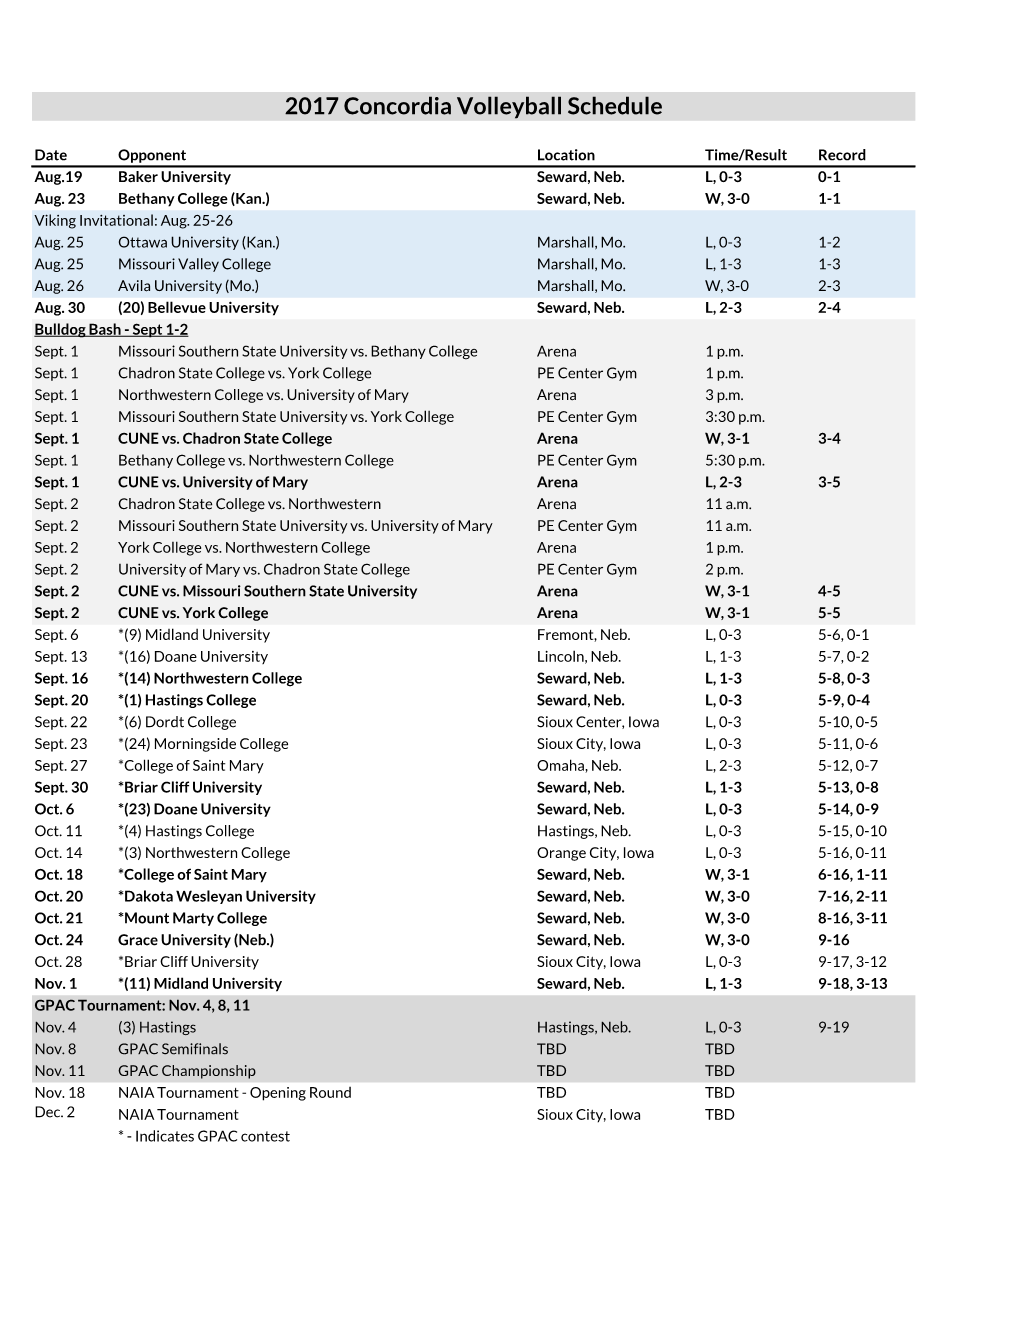 2017 Volleyball Schedule |